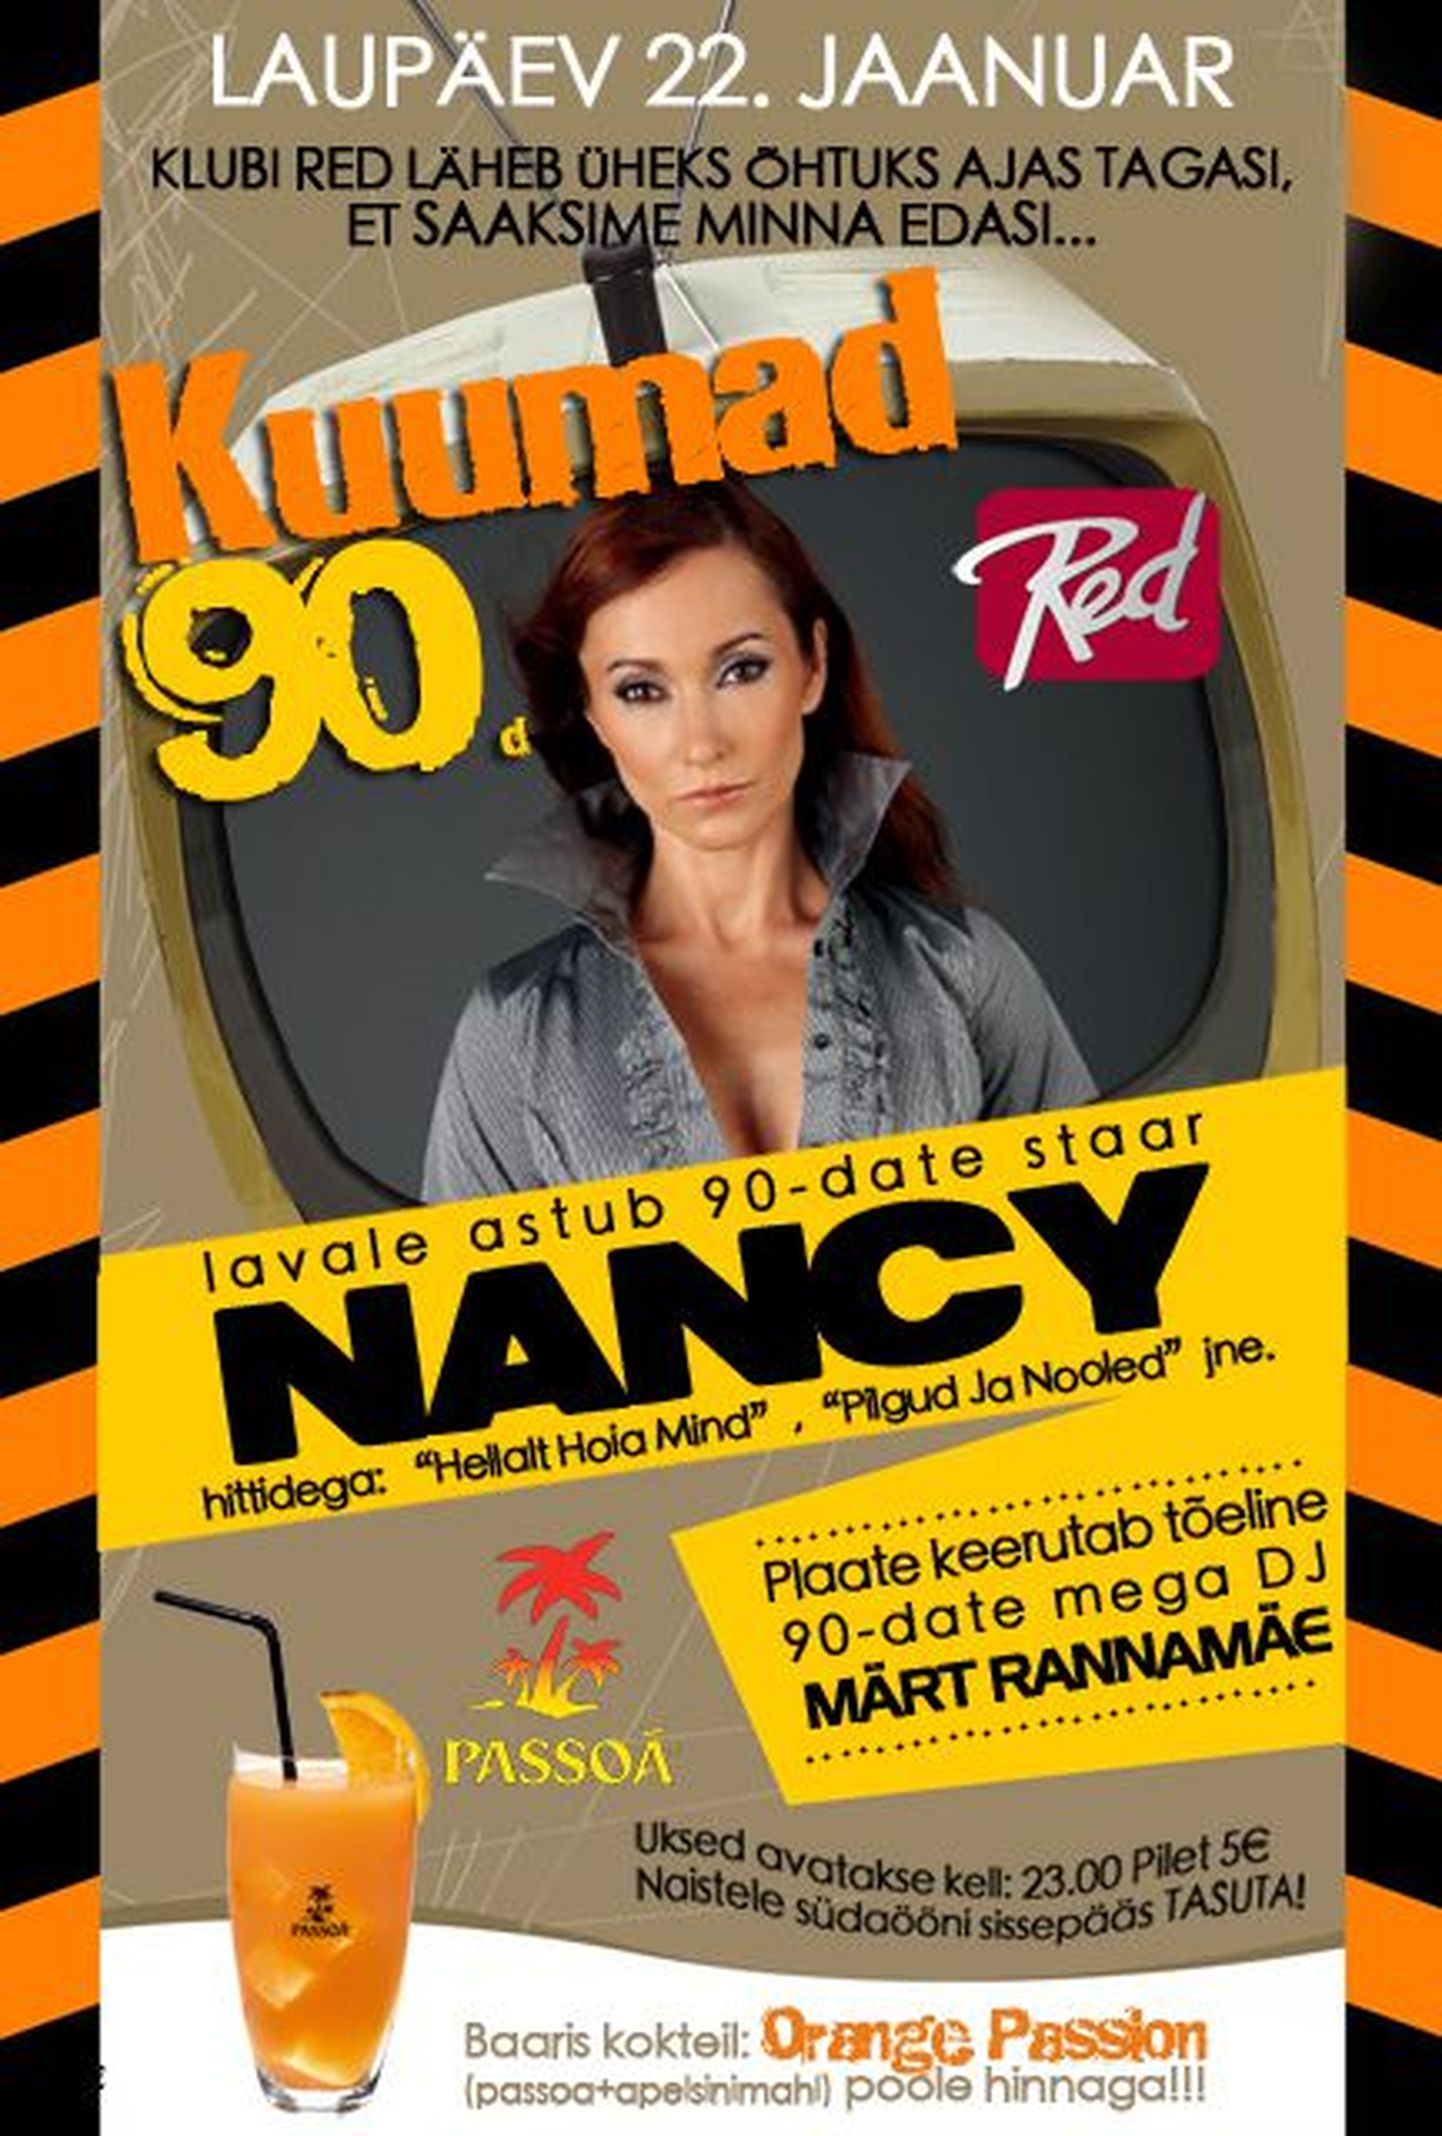 Viljandis ööklubis Red astub üles 90ndate megastaar Nancy